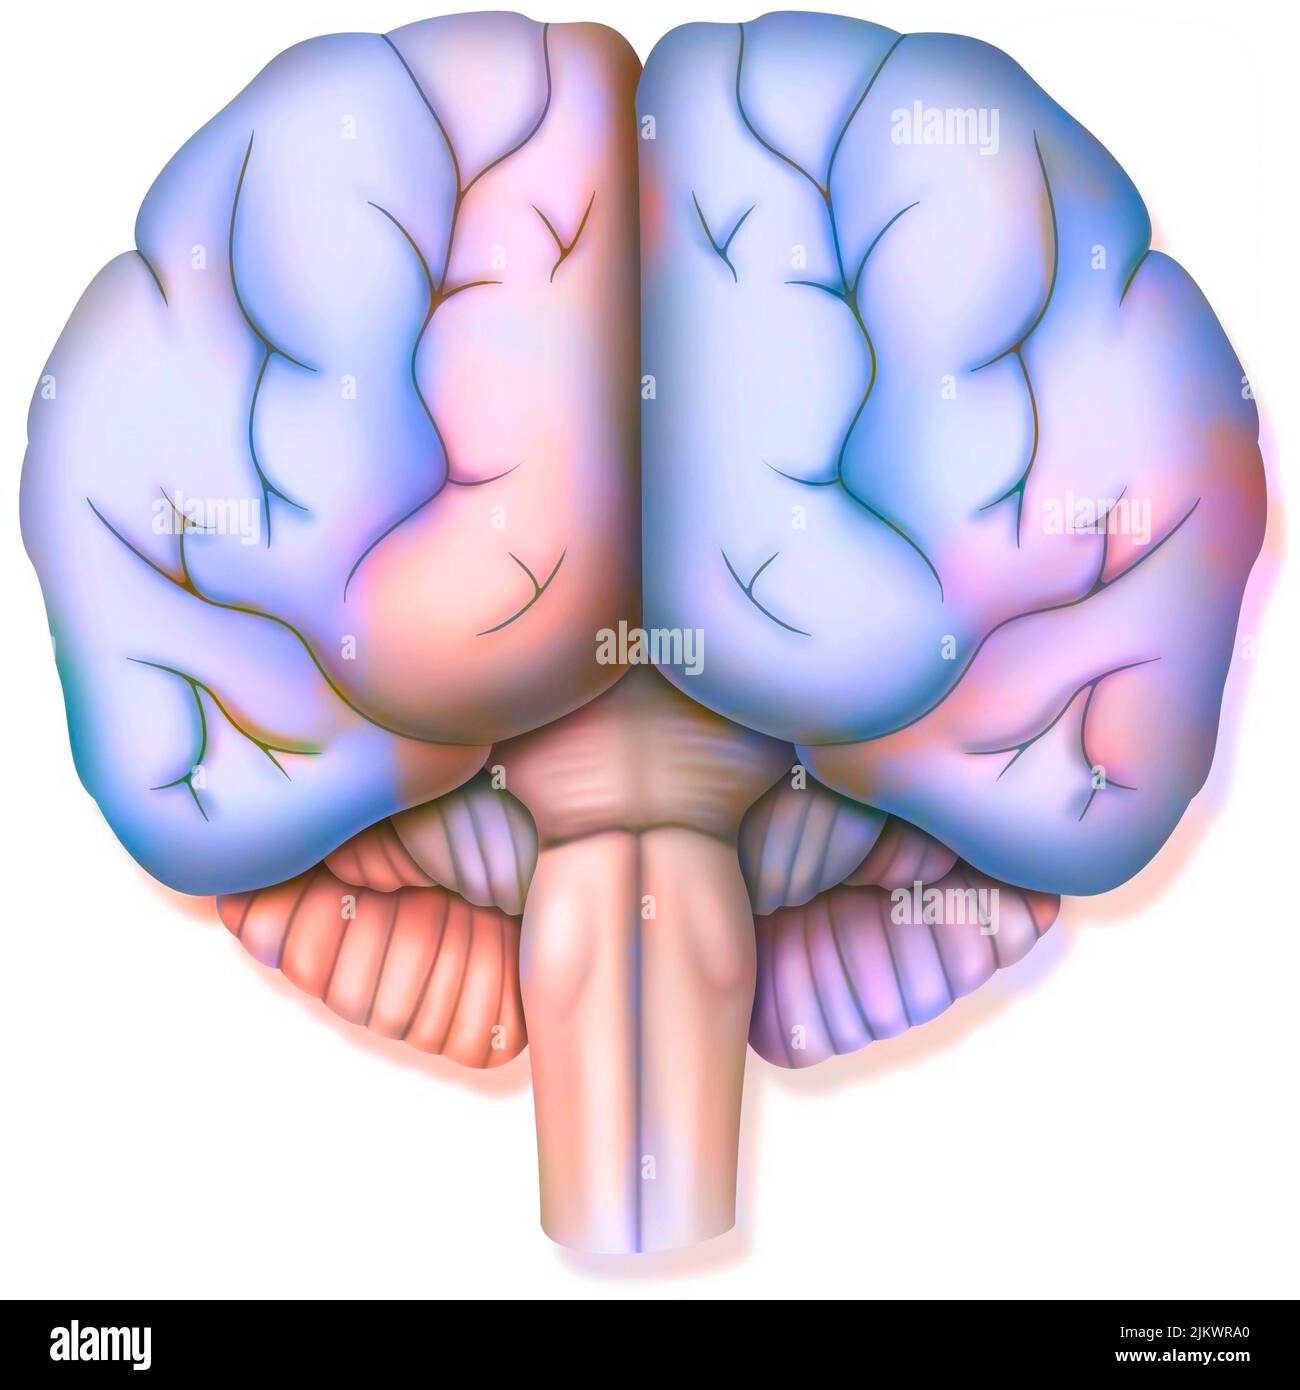 Cerveau, avec les deux hémisphères cérébraux, le cervelet et le tronc cérébral. Banque D'Images